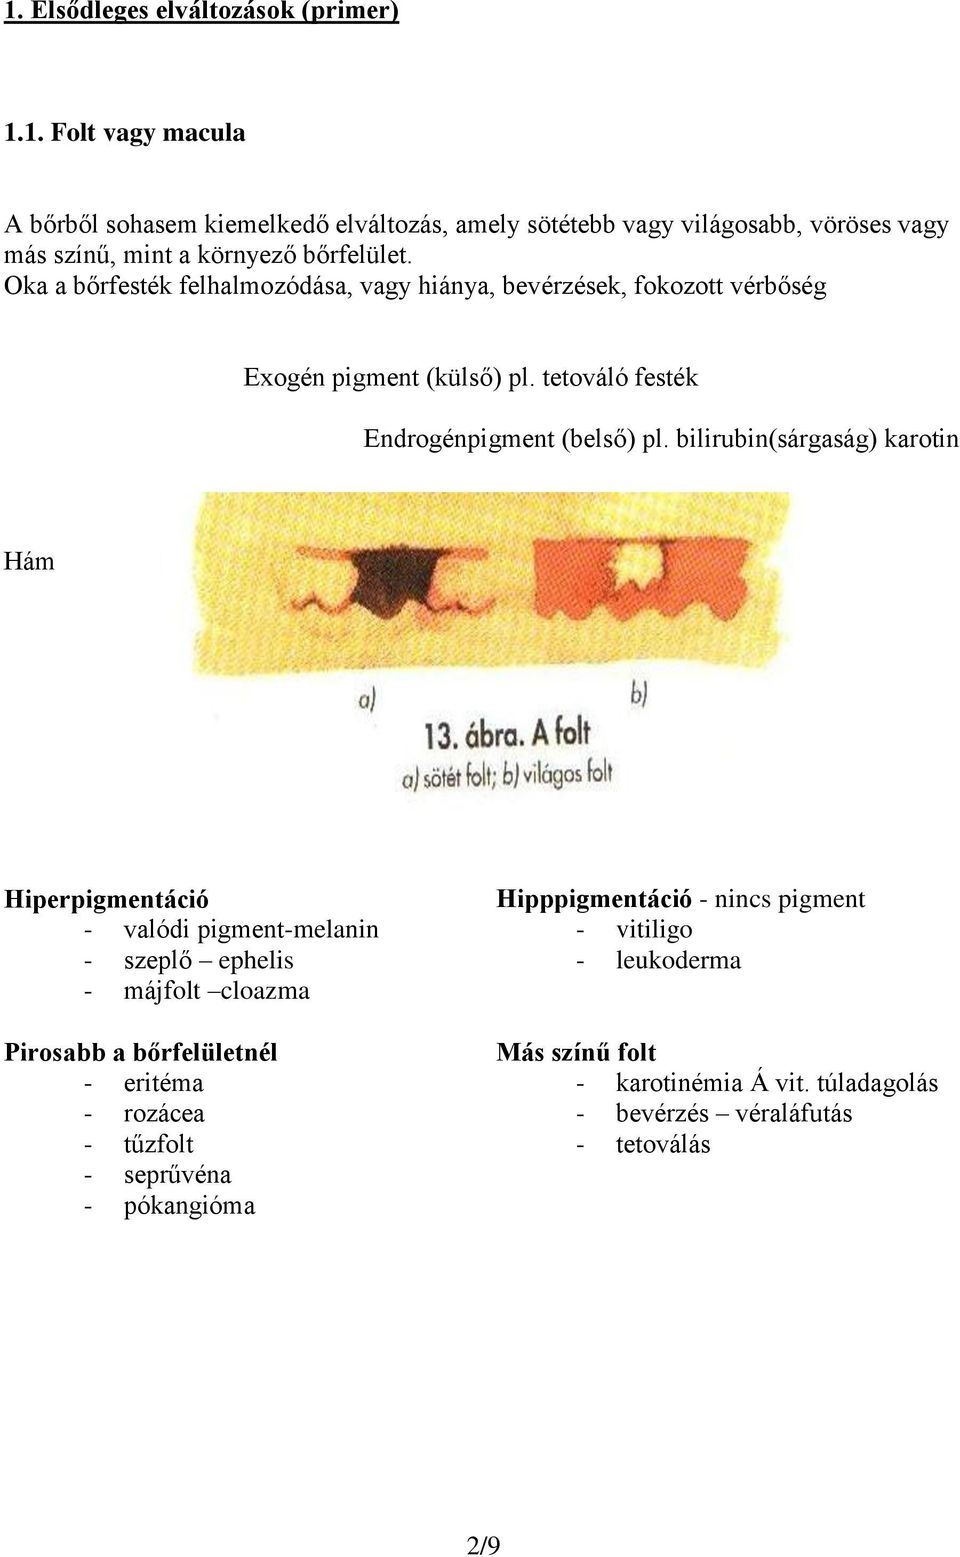 bilirubin(sárgaság) karotin Hám Fehér folt Hiperpigmentáció - valódi pigment-melanin - szeplő ephelis - májfolt cloazma Pirosabb a bőrfelületnél - eritéma - rozácea -